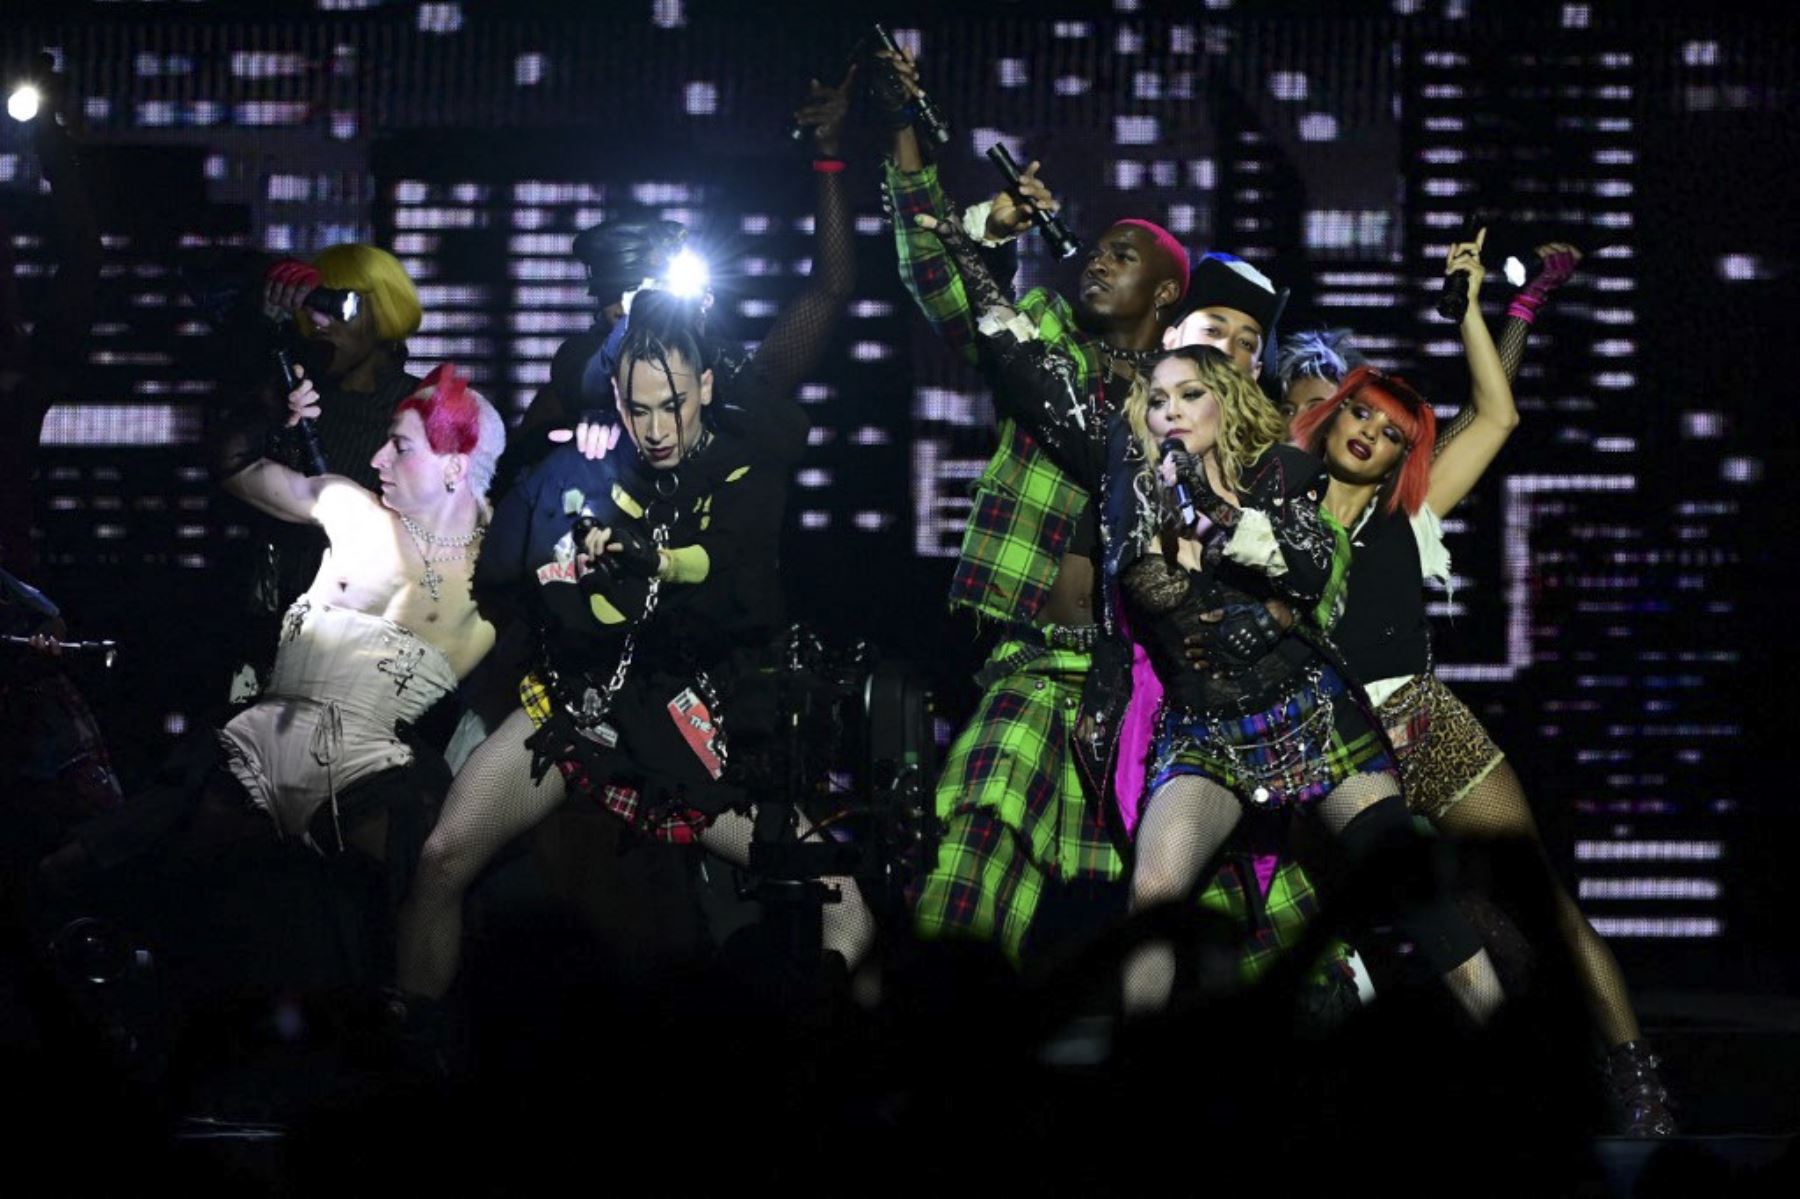 La estrella del pop estadounidense Madonna actúa en el escenario durante un concierto gratuito en la playa de Copacabana en Río de Janeiro, Brasil, el 4 de mayo de 2024.†. Madonna finalizó su "The Celebration Tour" con una actuación a la que asistieron alrededor de 1,5 millones de entusiastas fans. Foto: AFP